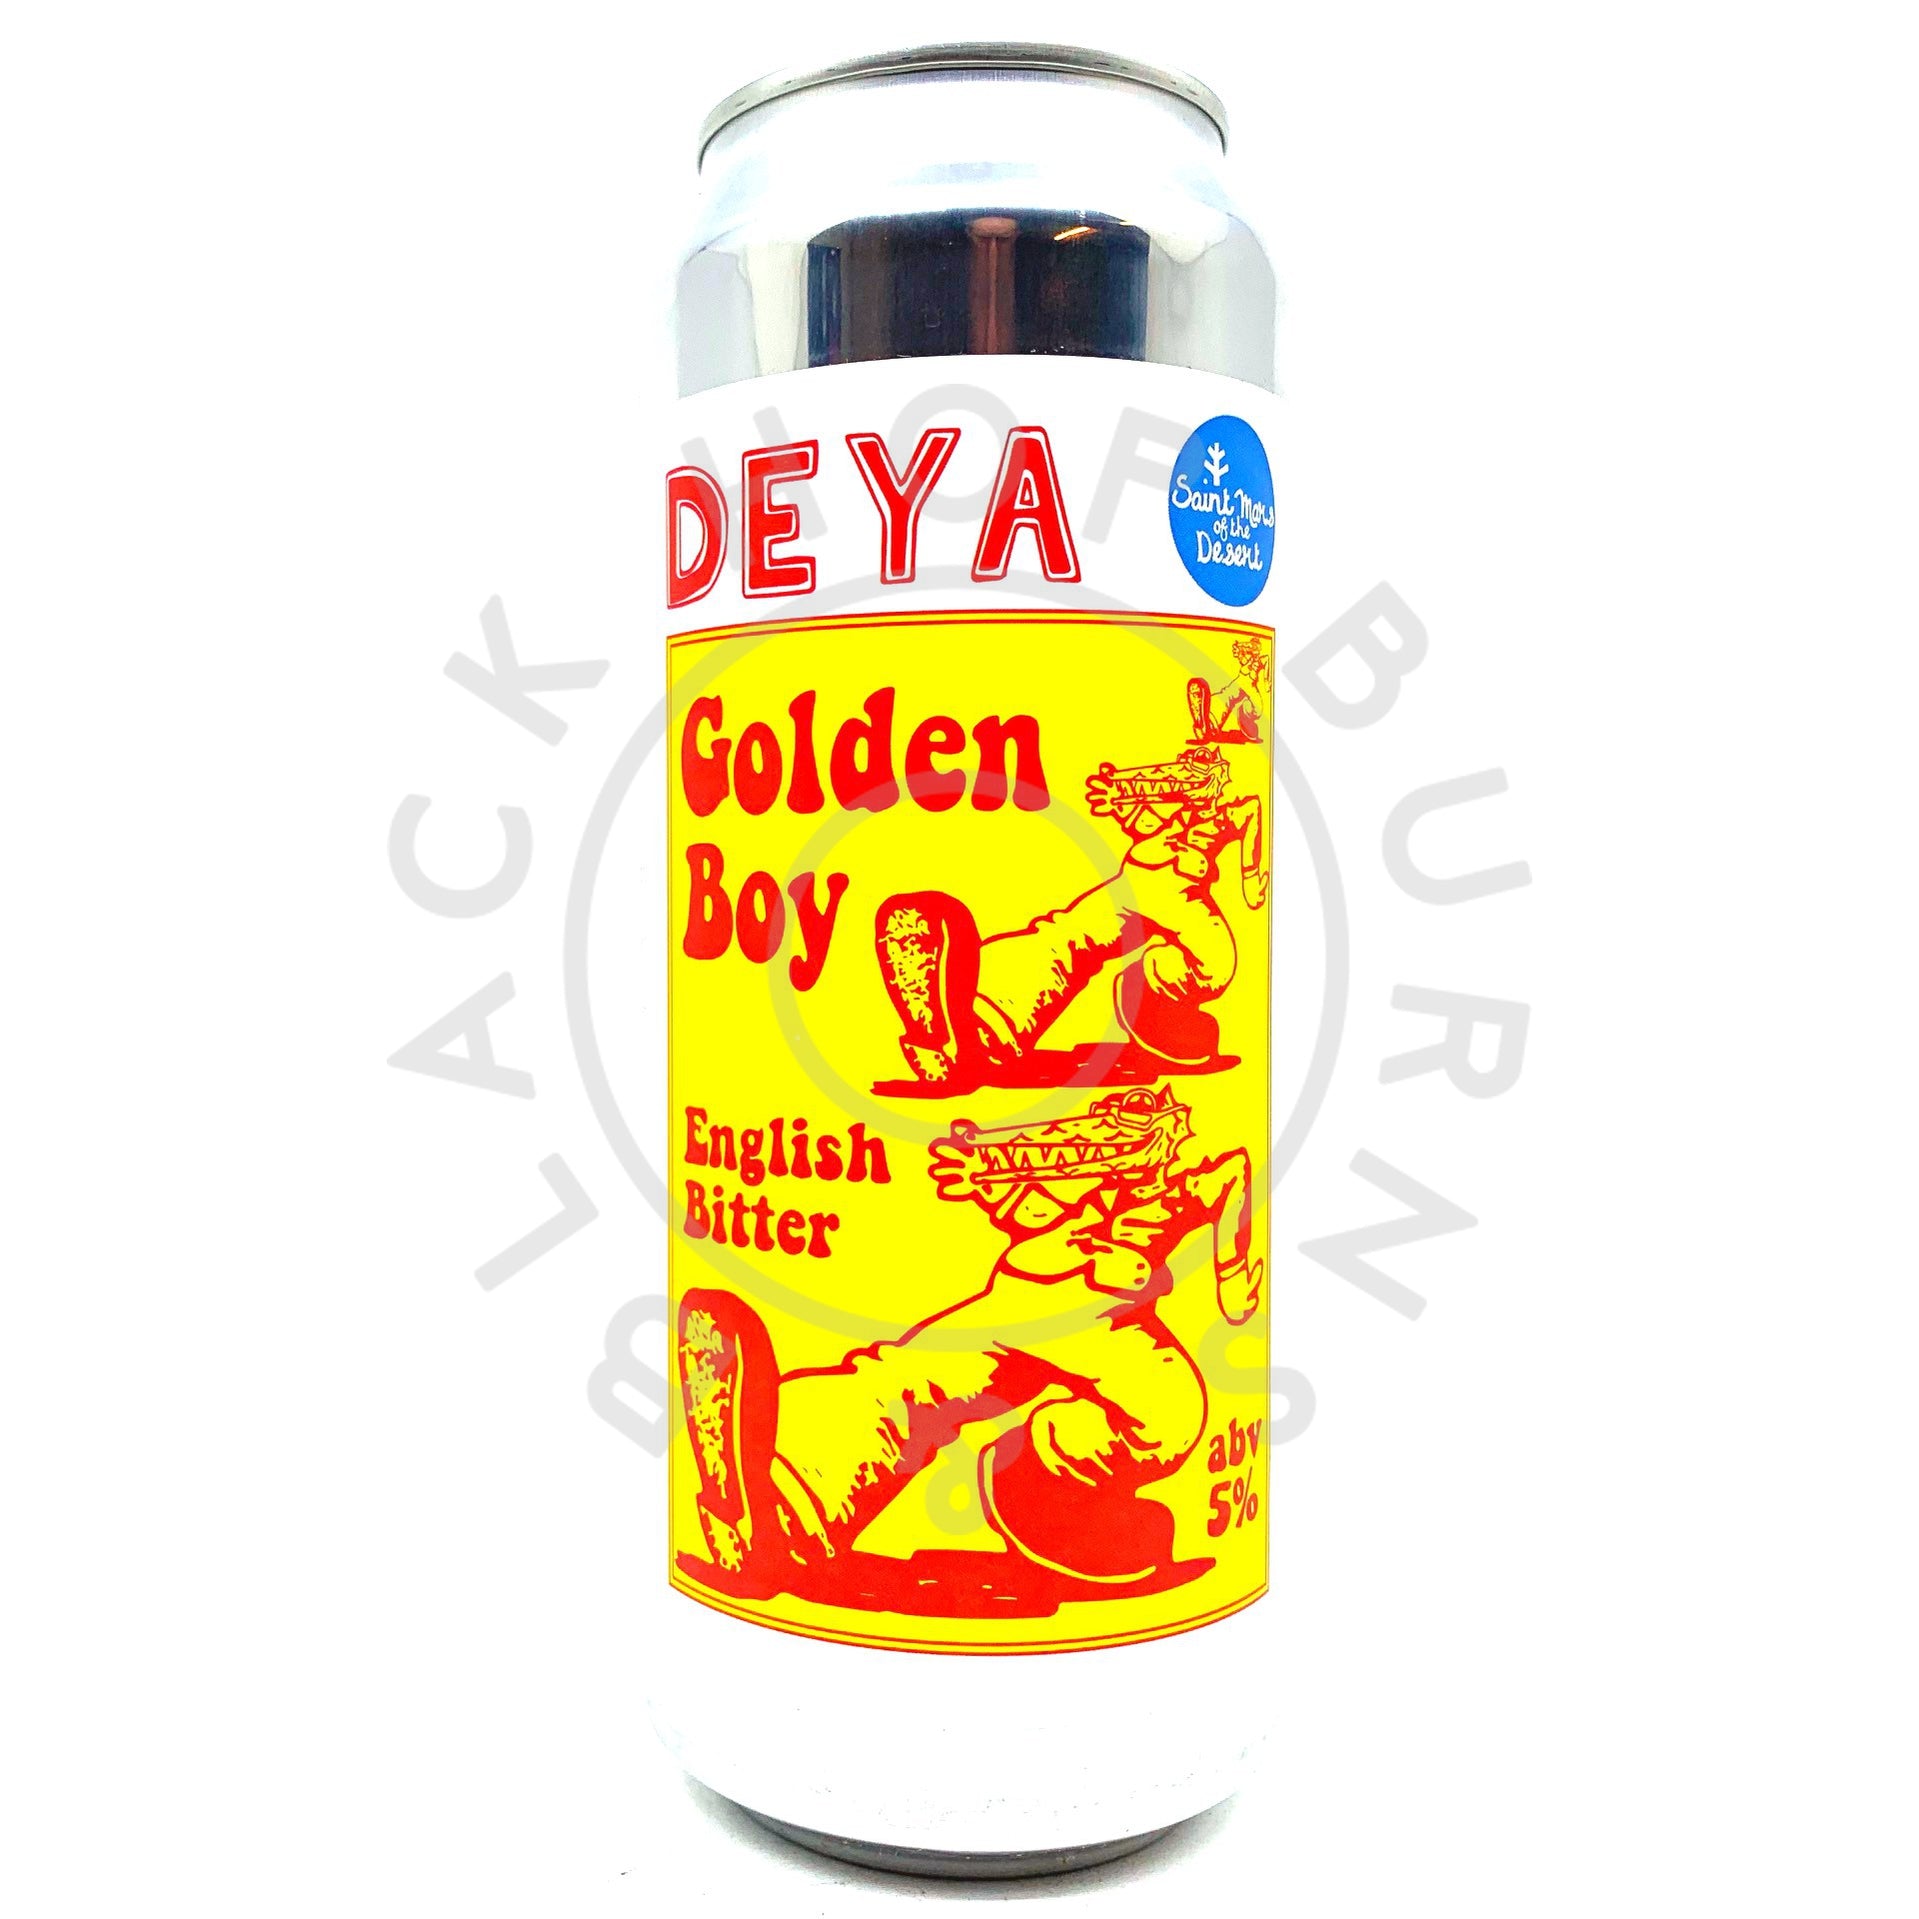 DEYA x St Mars Golden Boy Bitter 5% (500ml can)-Hop Burns & Black